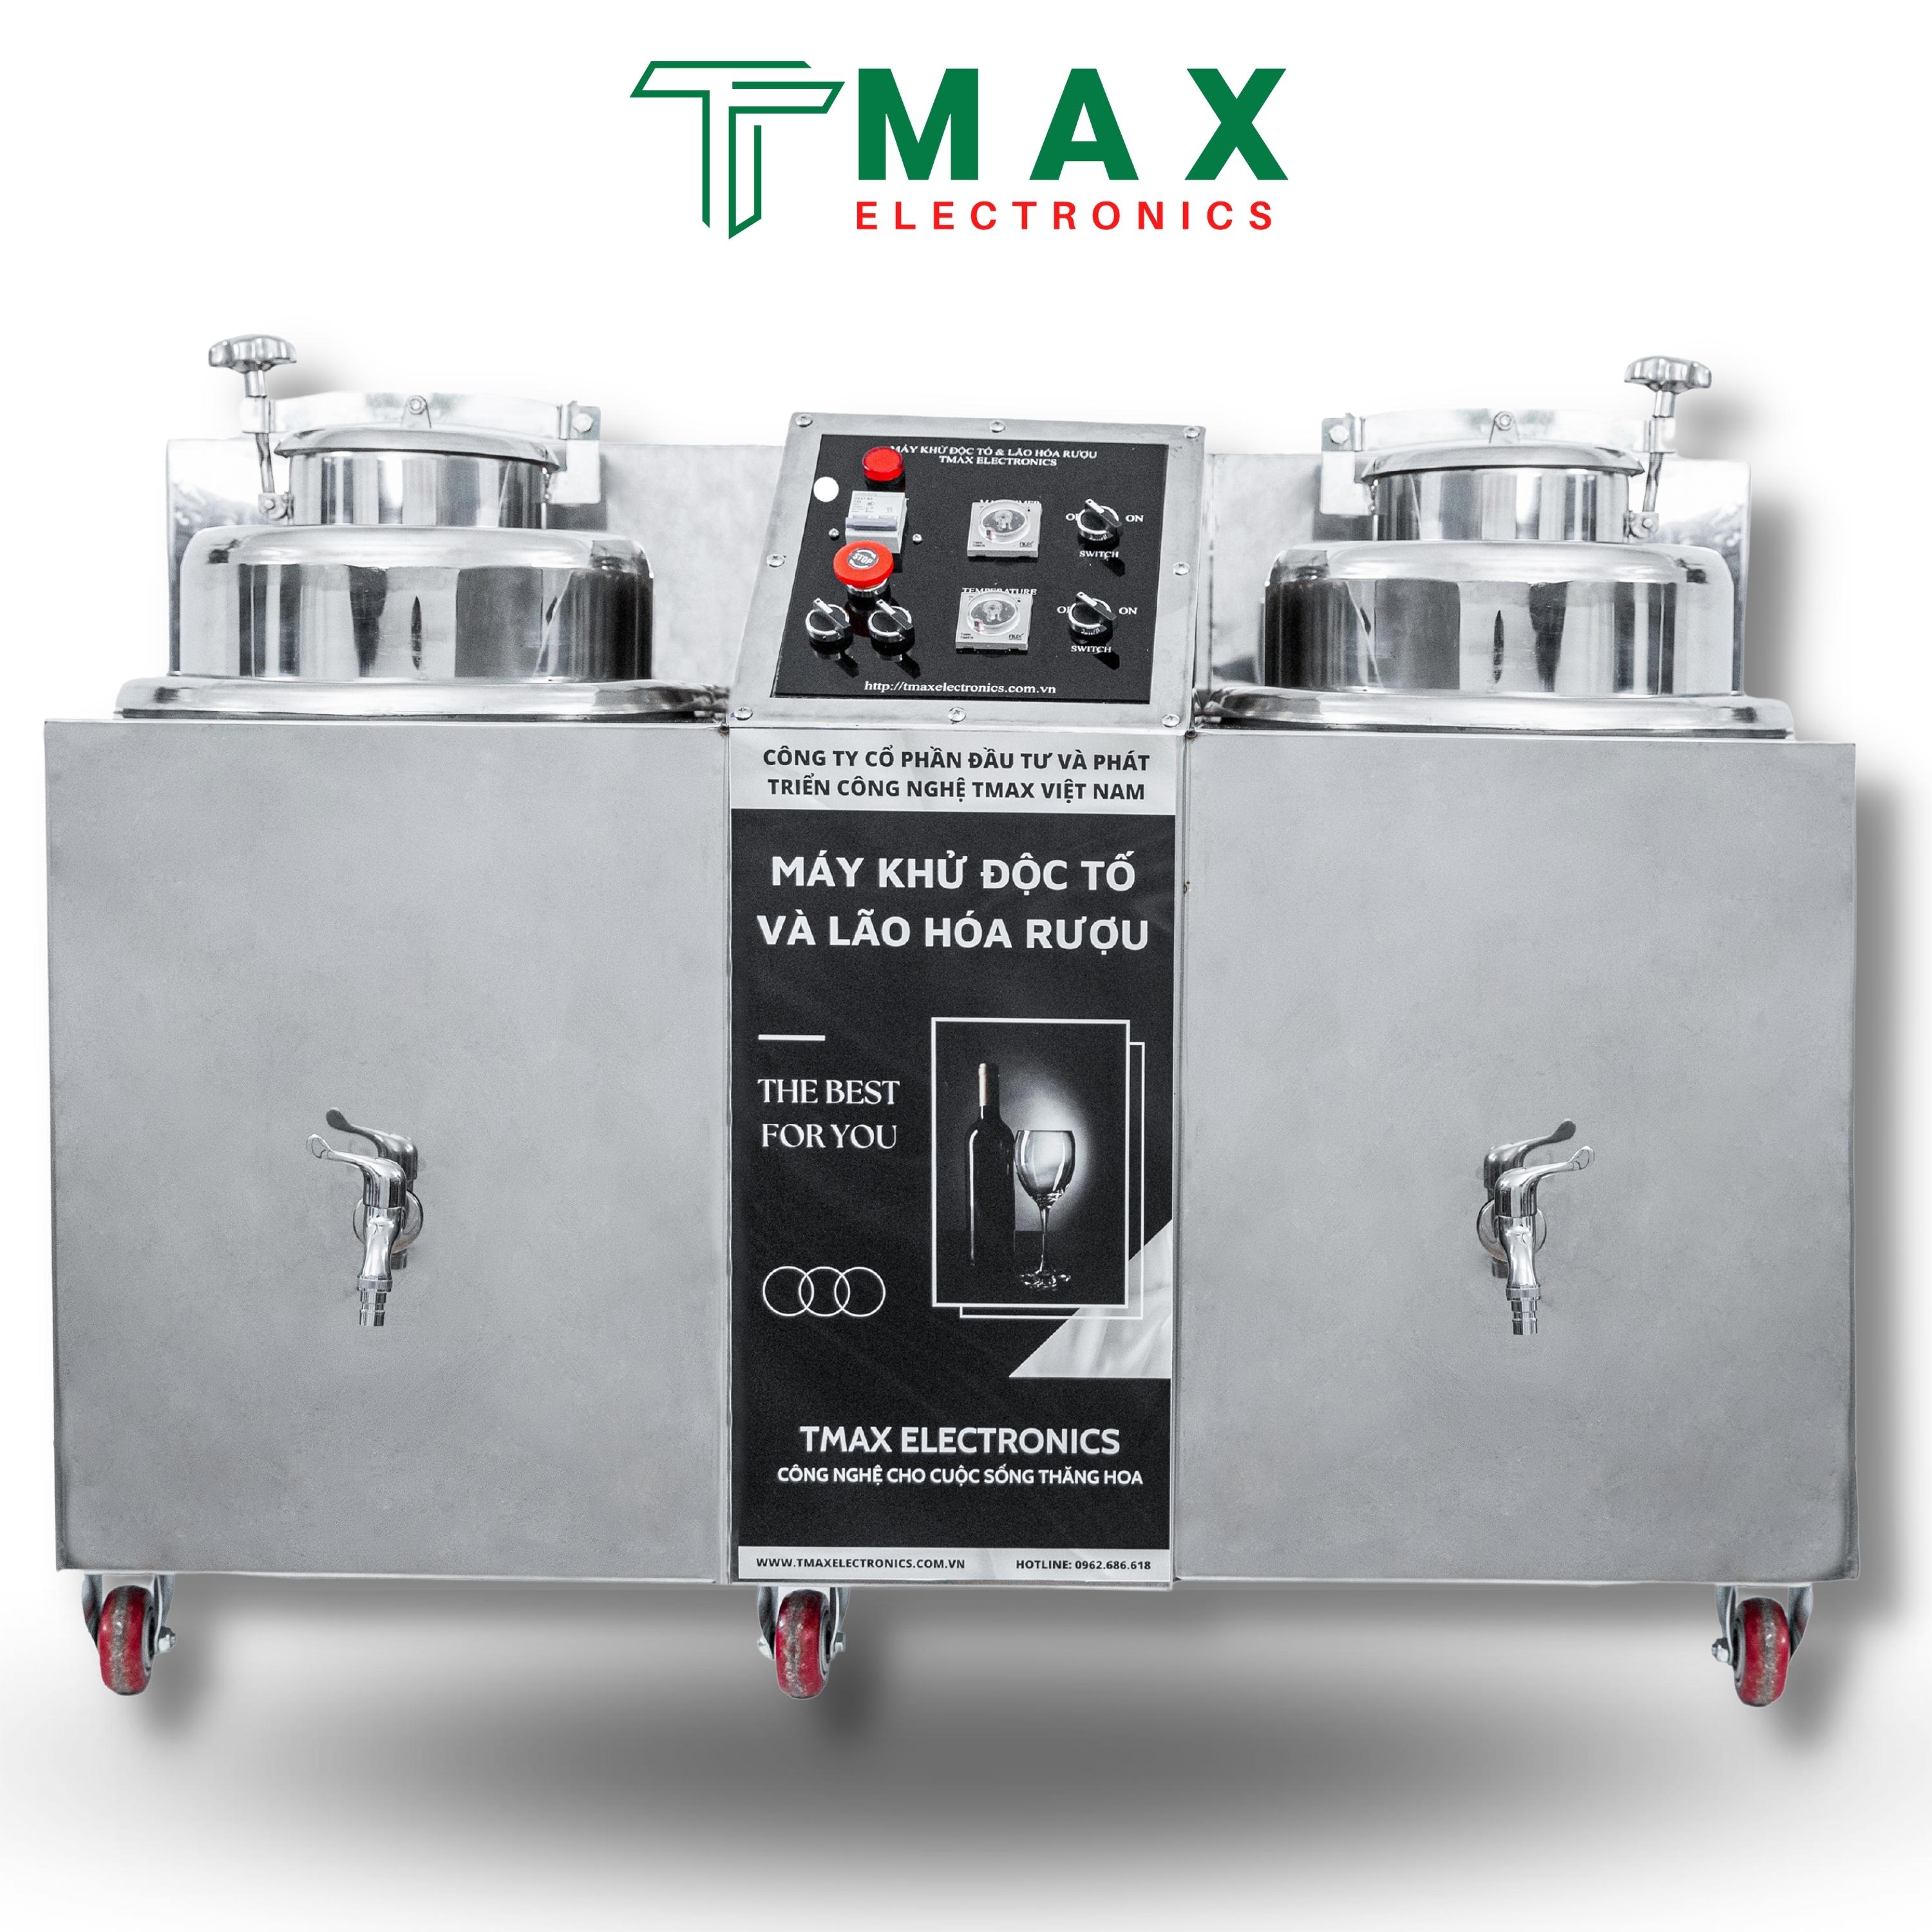 Máy Lão Hóa Rượu Tmax Electronics 70L